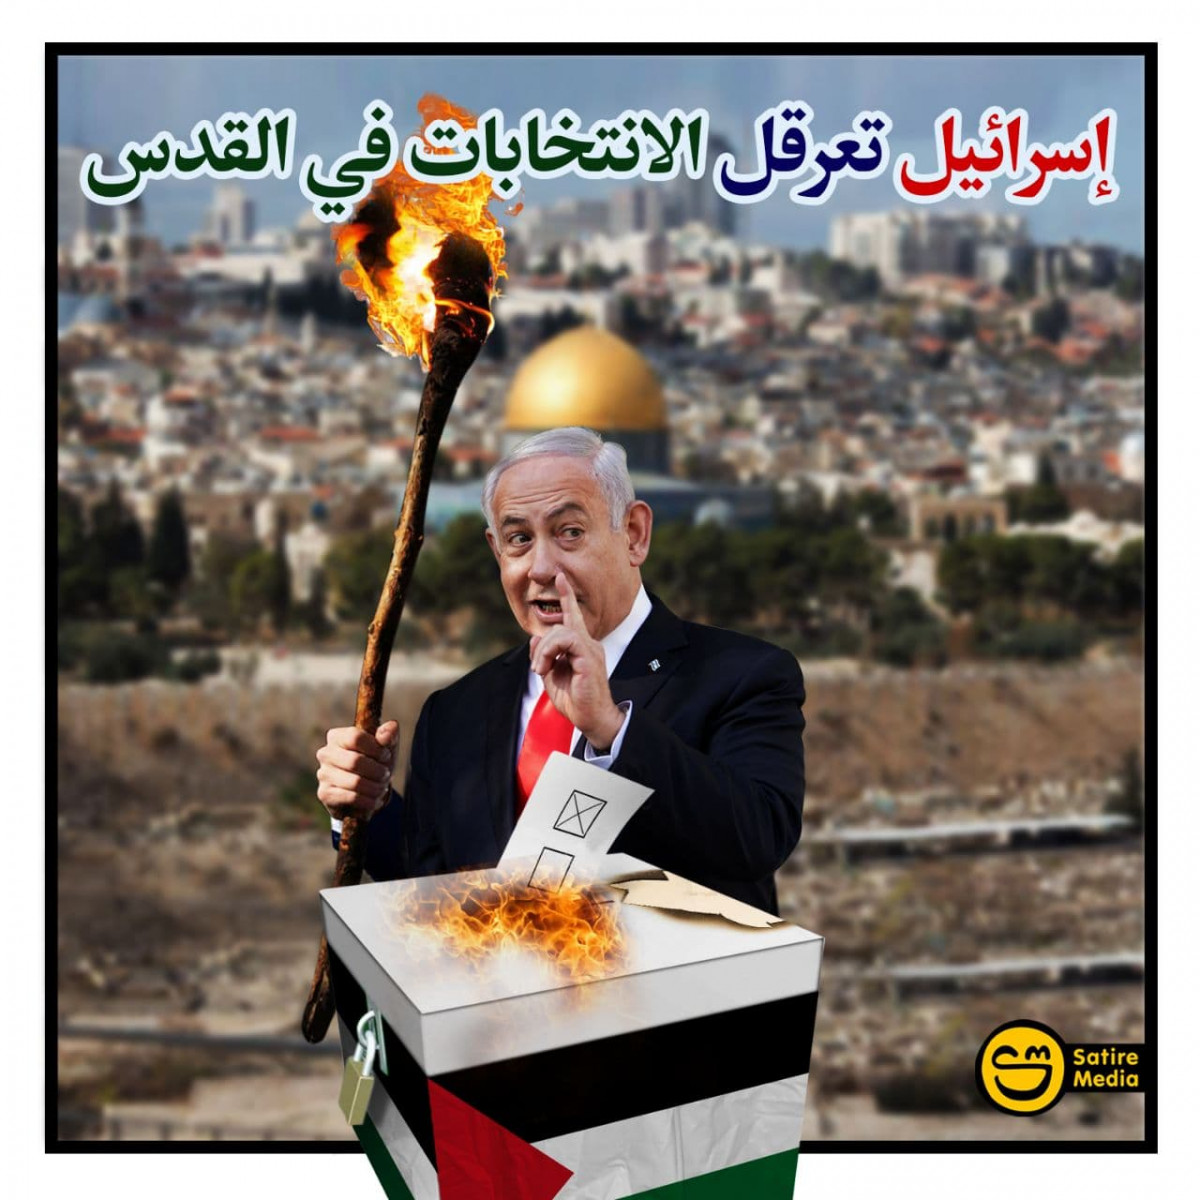 إسرائيل تعرقل الانتخابات في القدس